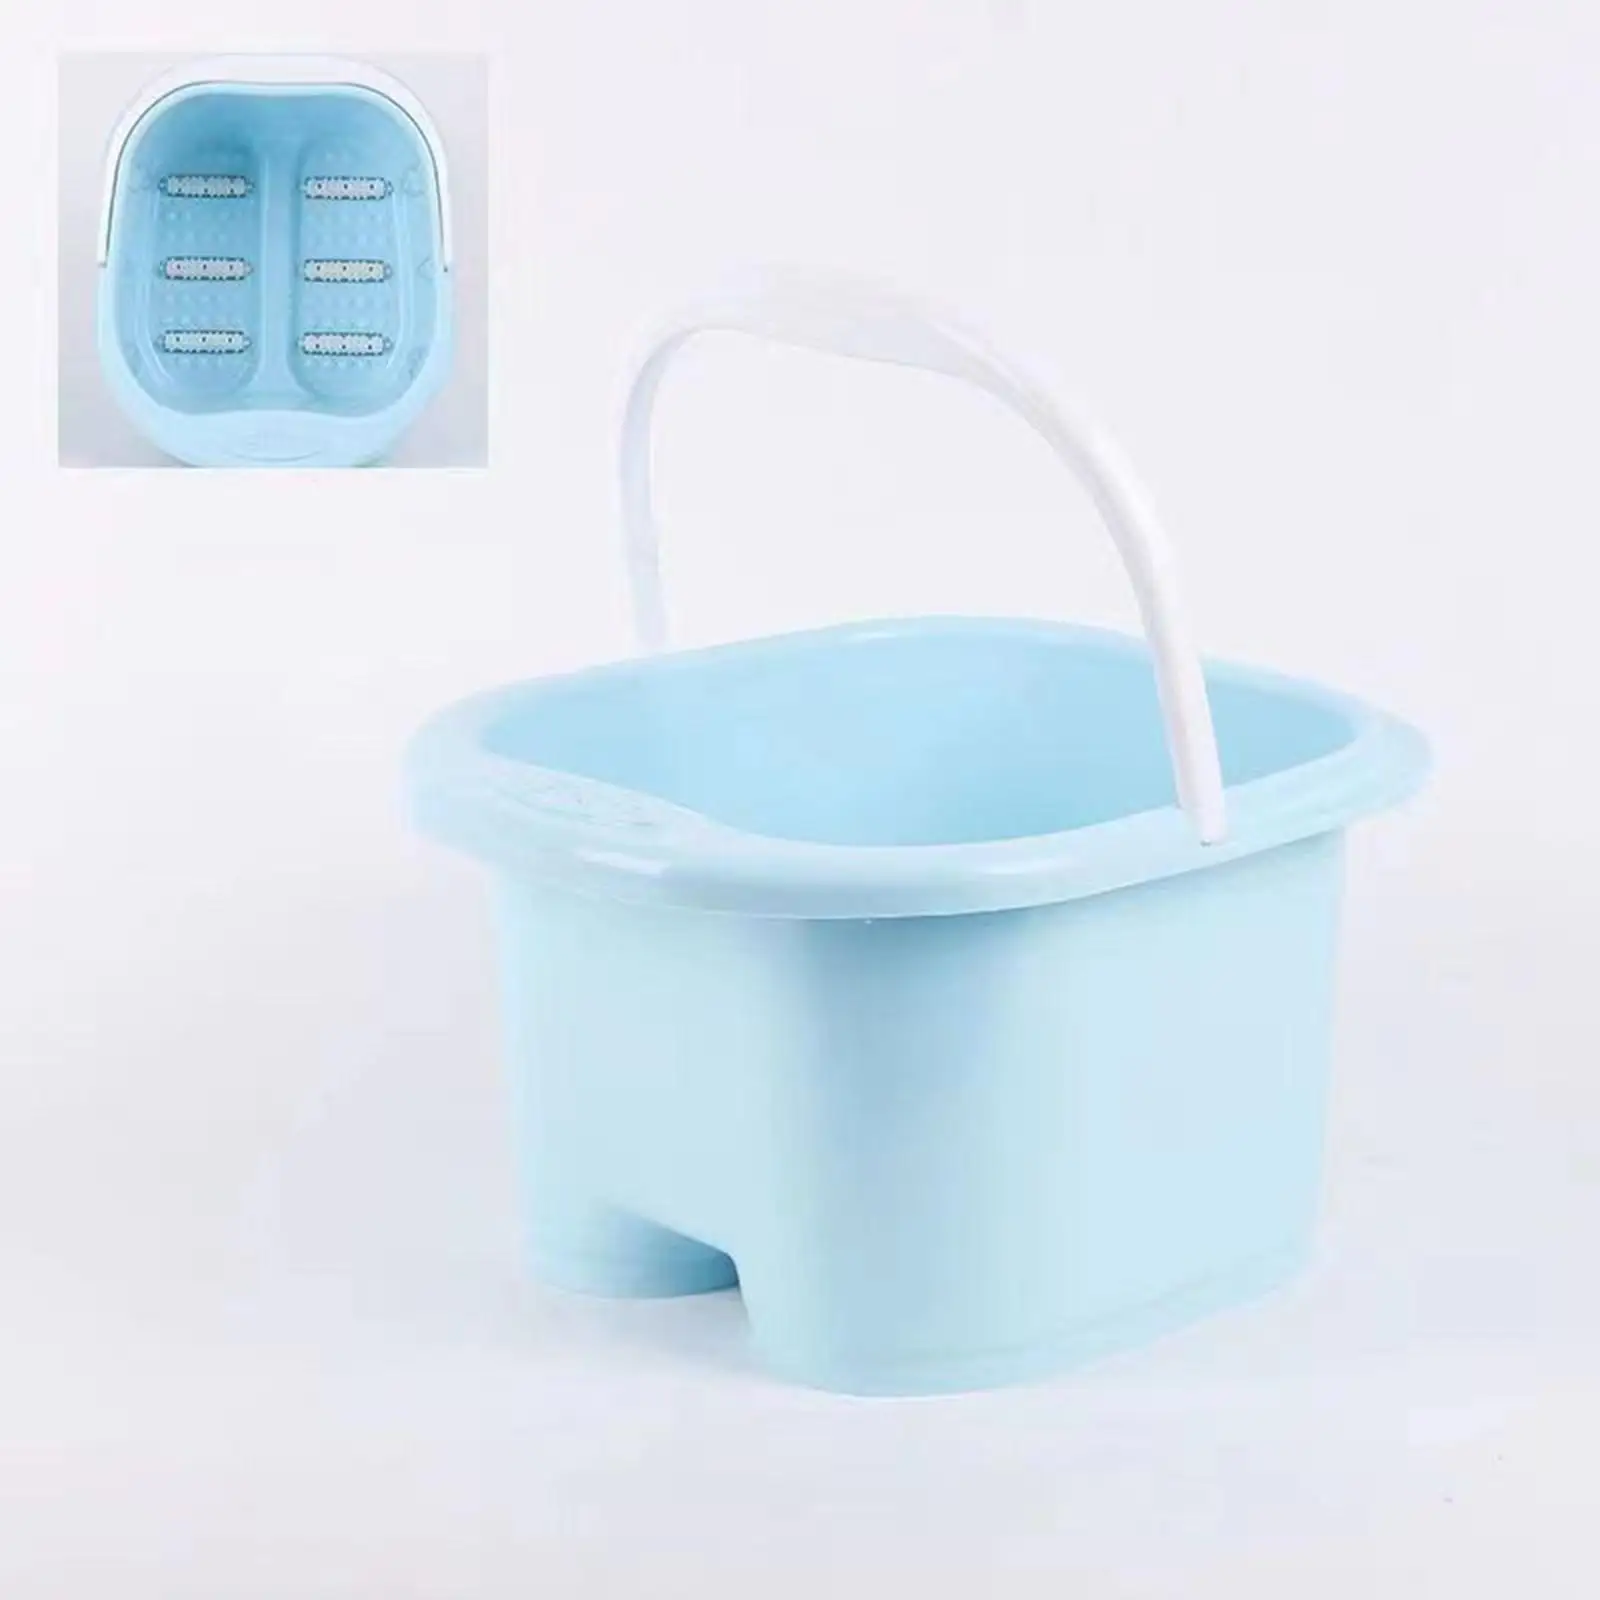 Foot Bath Basin, Foot Bath Bucket Large with Handle, Foot Massage Foot Soaking Tub, Foot Bath Soak Tub for Soaking Feet